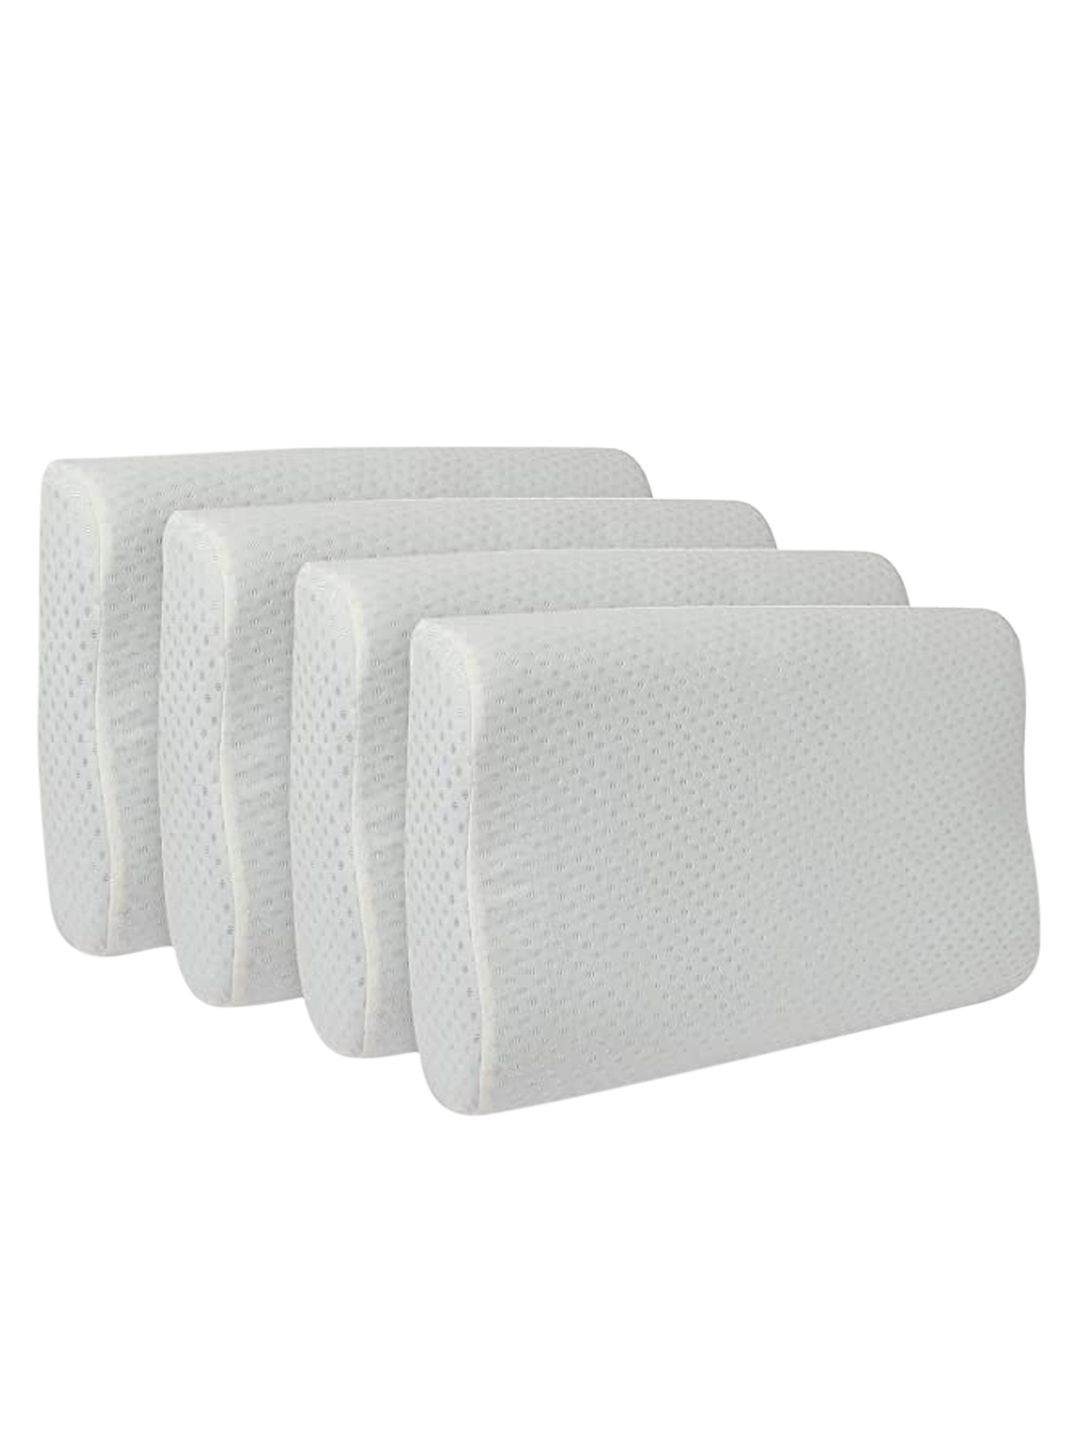 Sleepsia Set of 4  White Solid Cotton Therapedic  Pillows Price in India